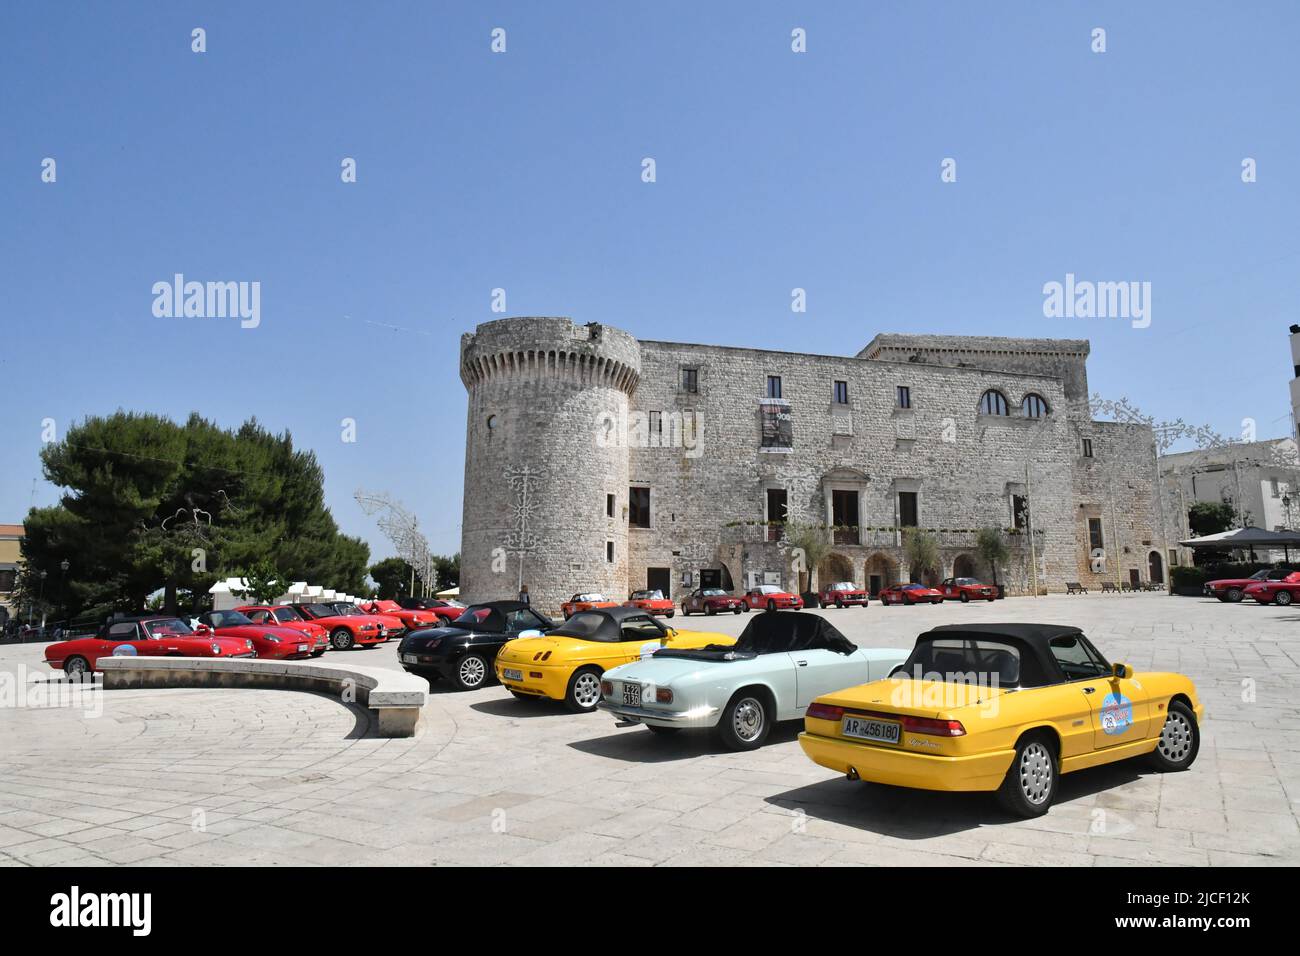 Recogida de coches deportivos frente al castillo de Conversano, una ciudad antigua del sur de Italia. Foto de stock